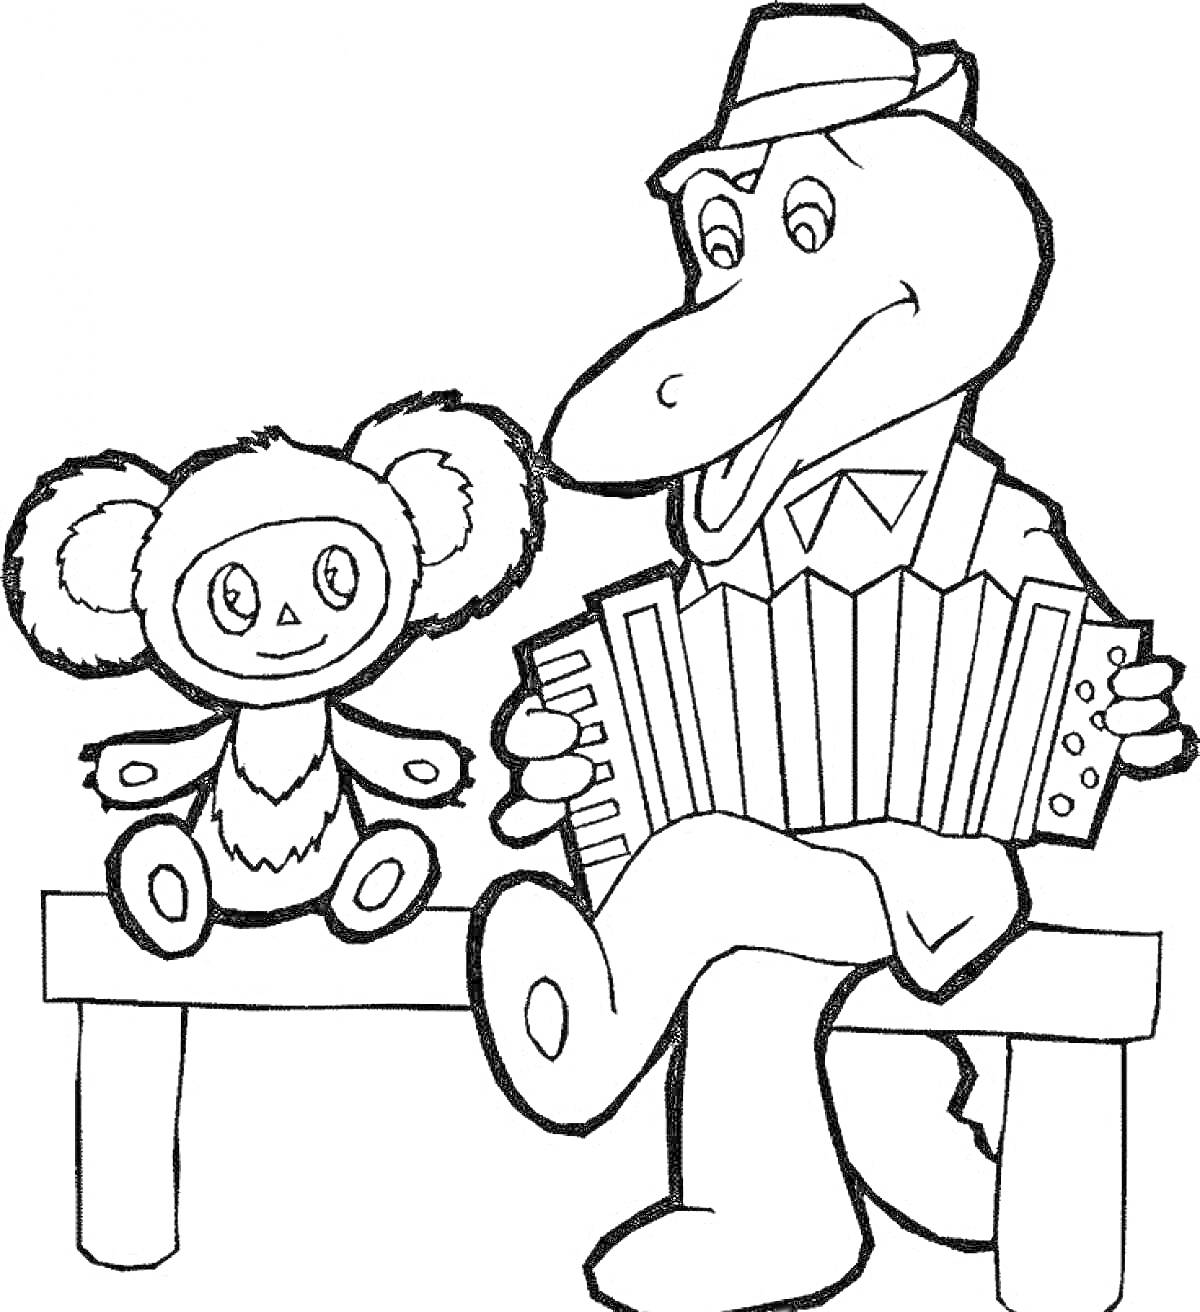 Чебурашка и крокодил Гена на скамейке - Гена играет на аккордеоне, Чебурашка сидит рядом